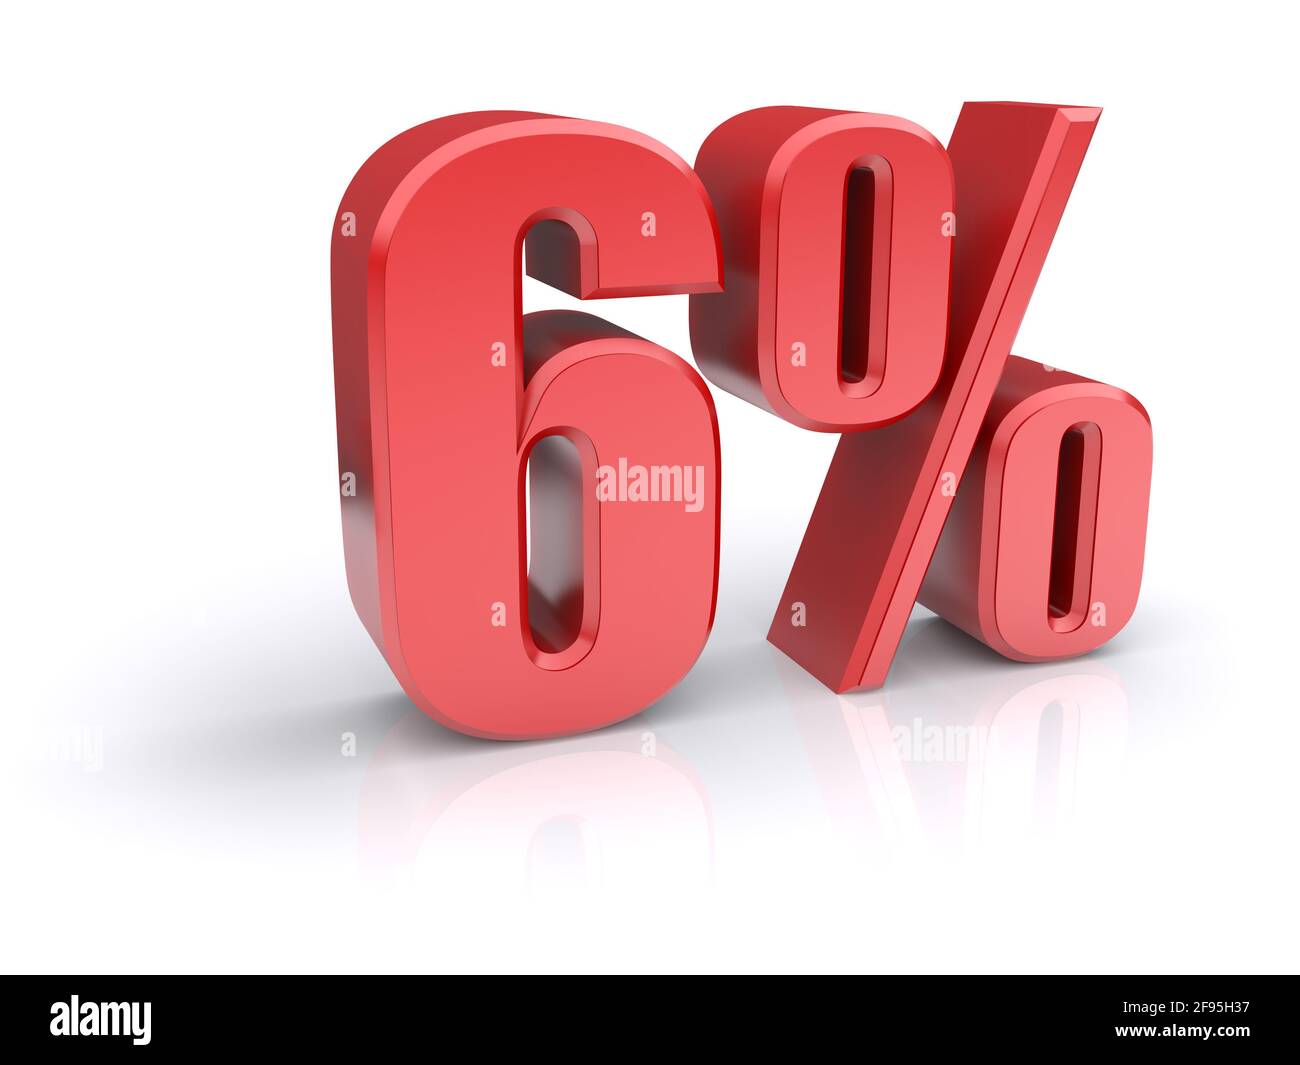 Icona rossa del tasso percentuale del 6% su sfondo bianco. immagine 3d rappresentata Foto Stock